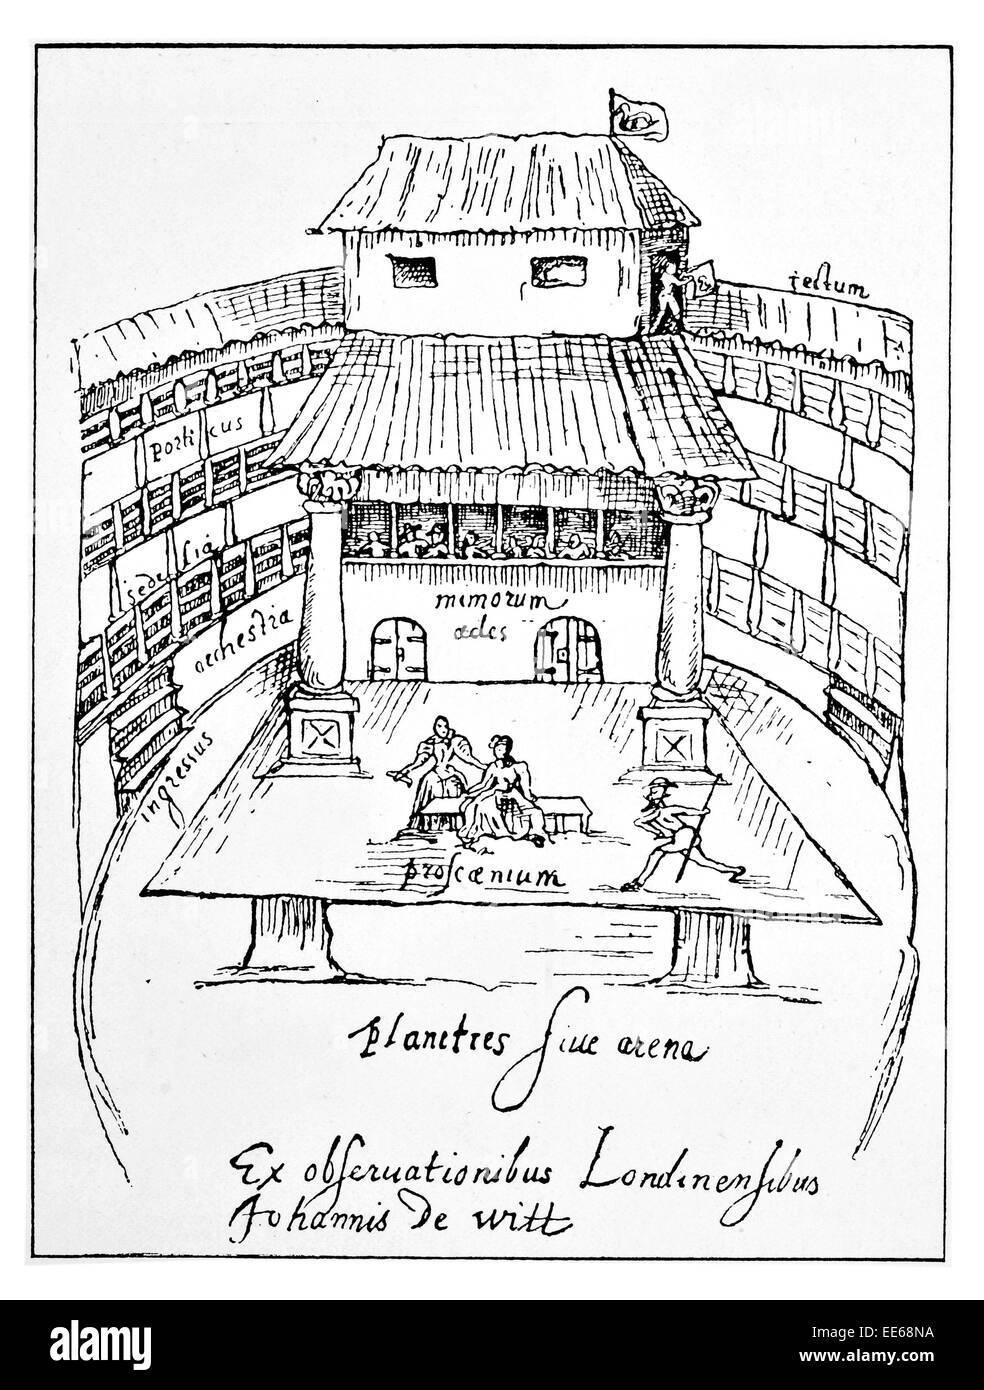 Le temps de l'intérieur du théâtre Swan de William Shakespeare Angleterre Londres Southwark playhouse 1595 intérimaire acteur dramaturge jouer Banque D'Images